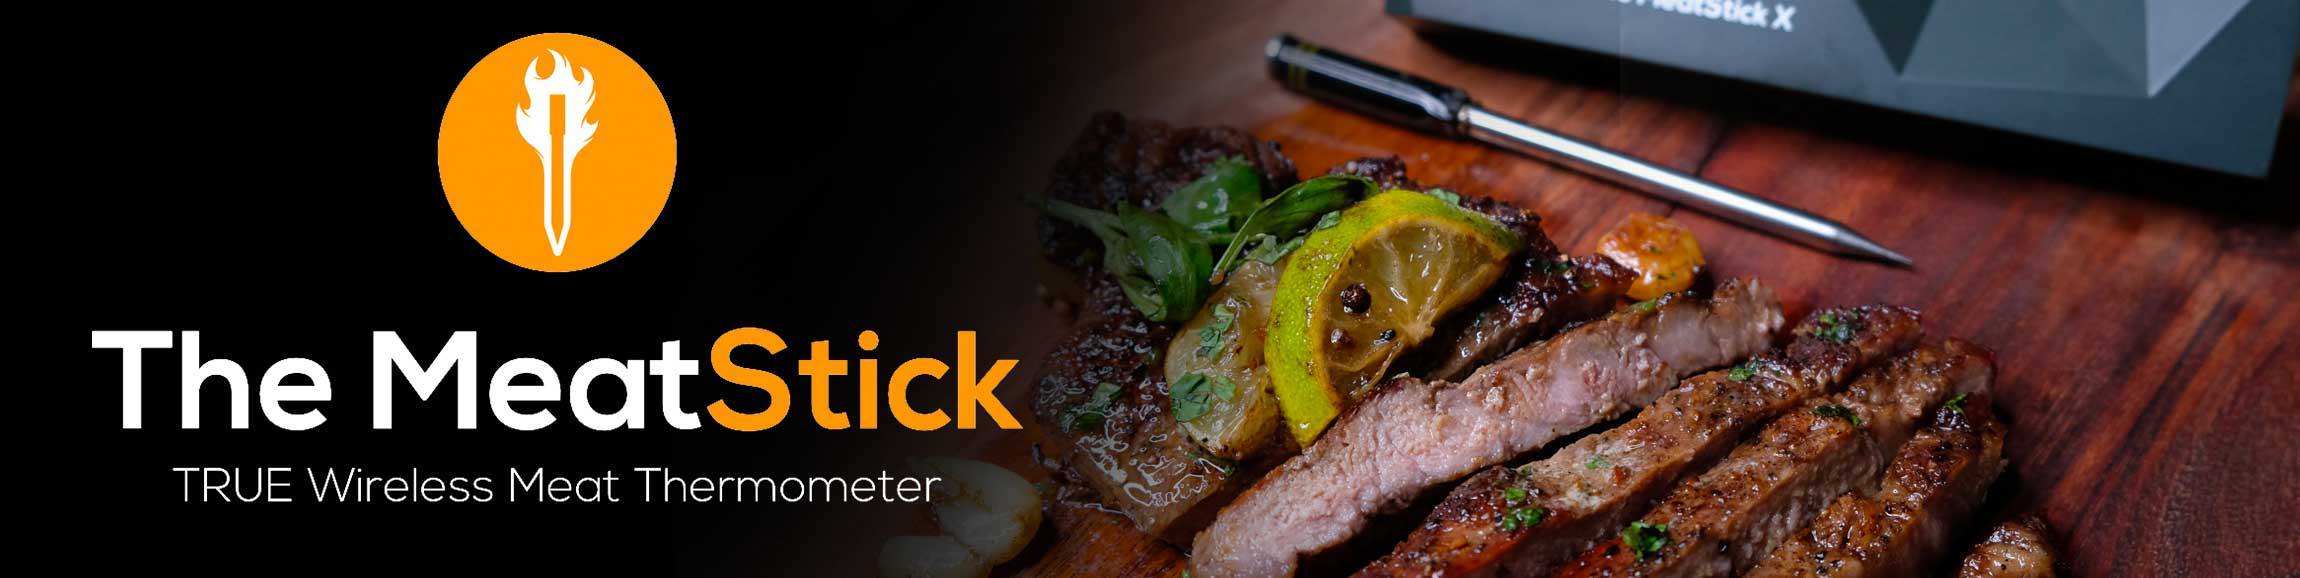 MeatStick - Jetzt zum Top Preis kaufen! – Getaggt Thermometer – FIRE&FOOD